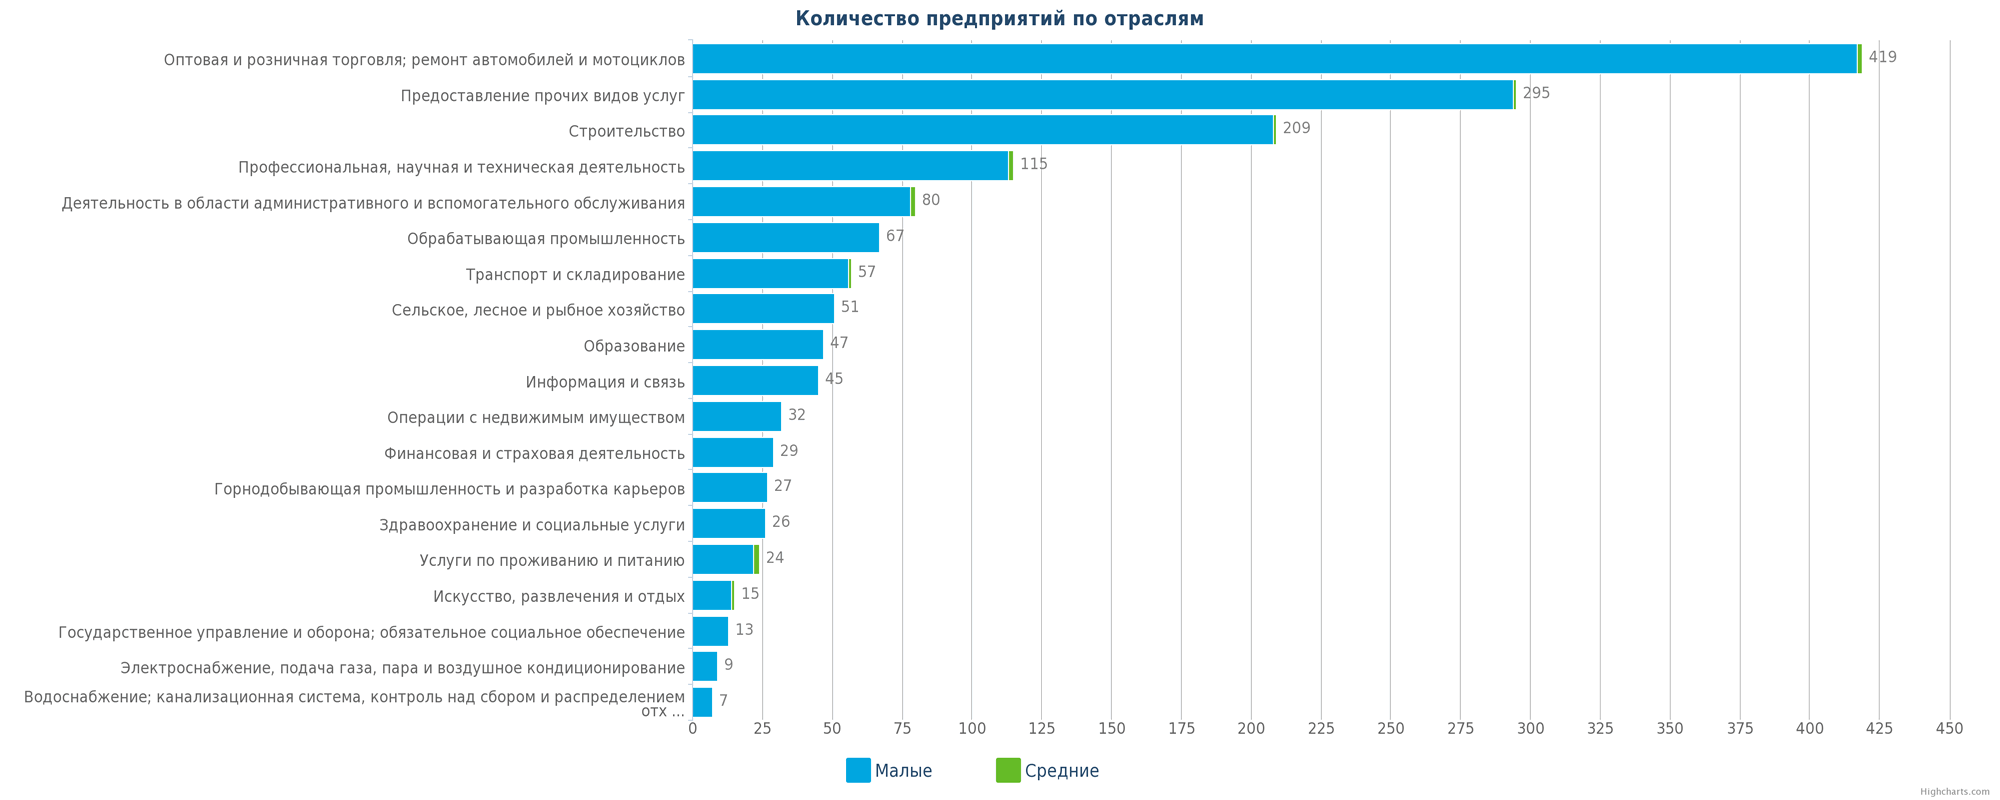 Количество новых организаций в Казахстане по отраслям